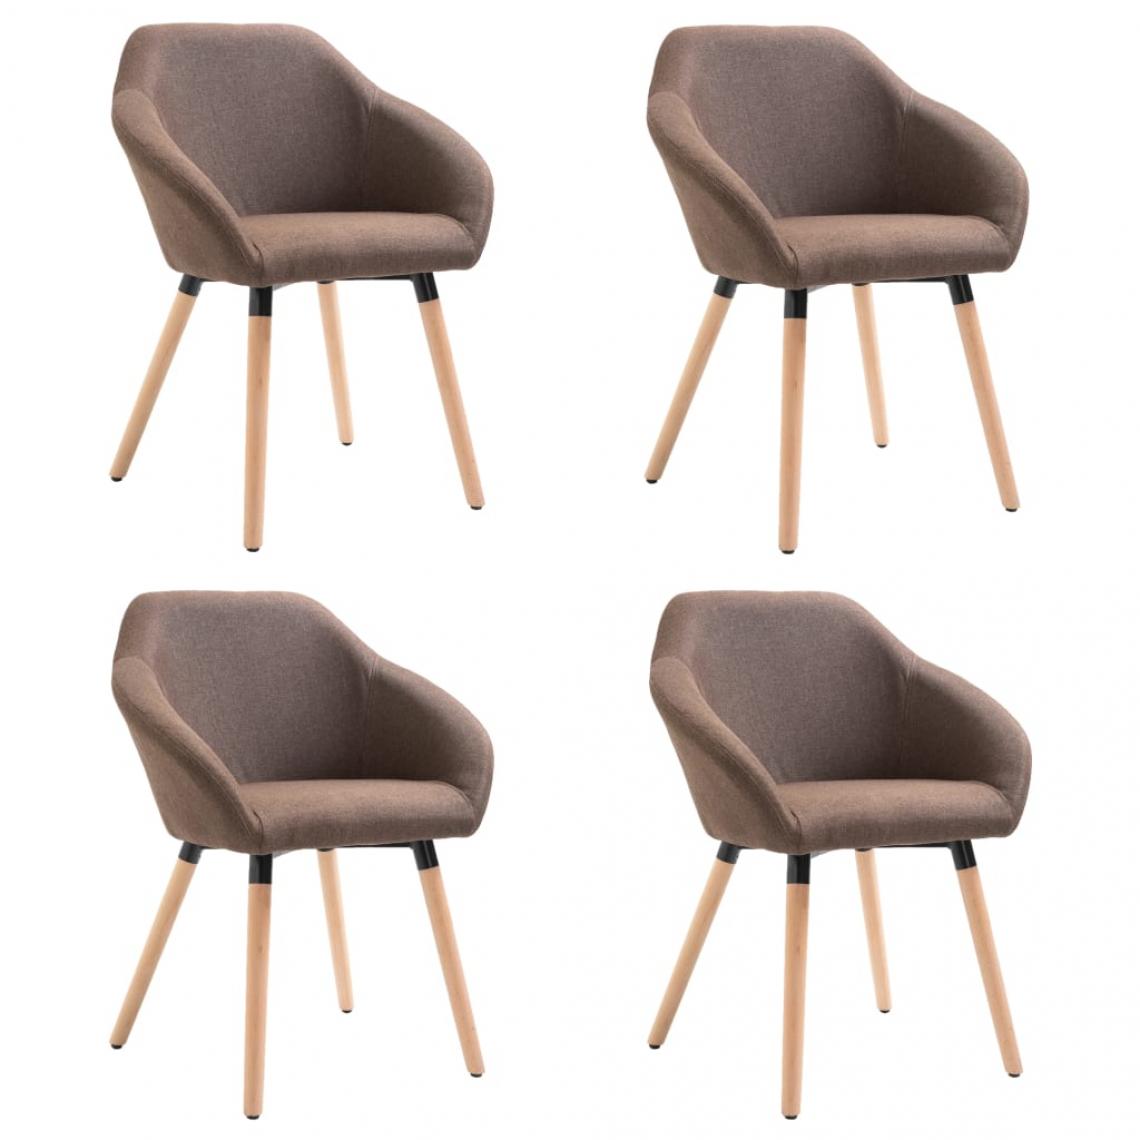 Decoshop26 - Lot de 4 chaises de salle à manger cuisine design moderne tissu marron CDS021748 - Chaises